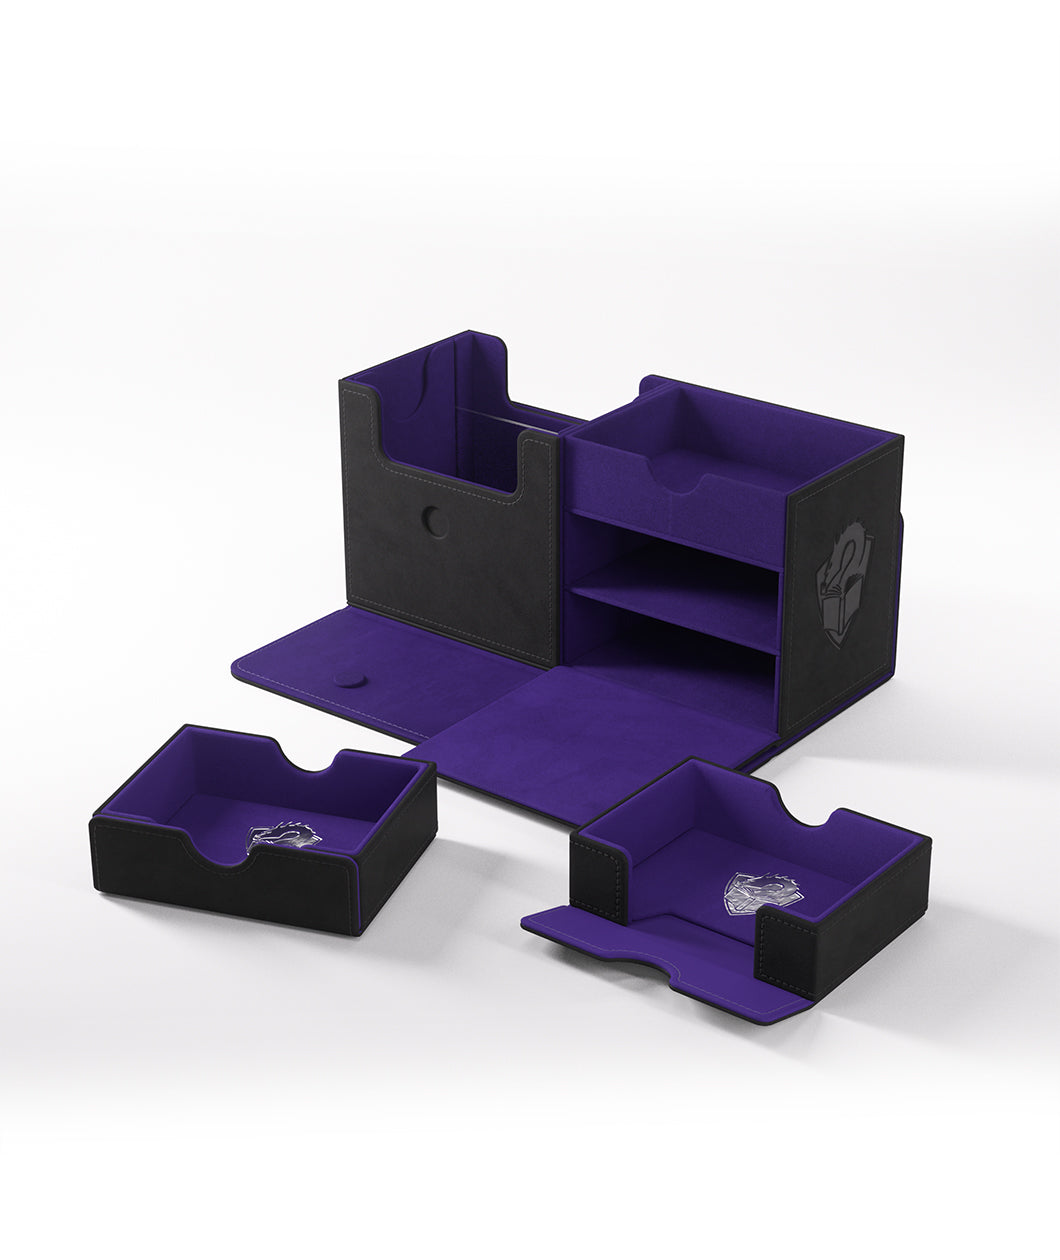 UNO junior - Simple Deck box by adc design - MakerWorld